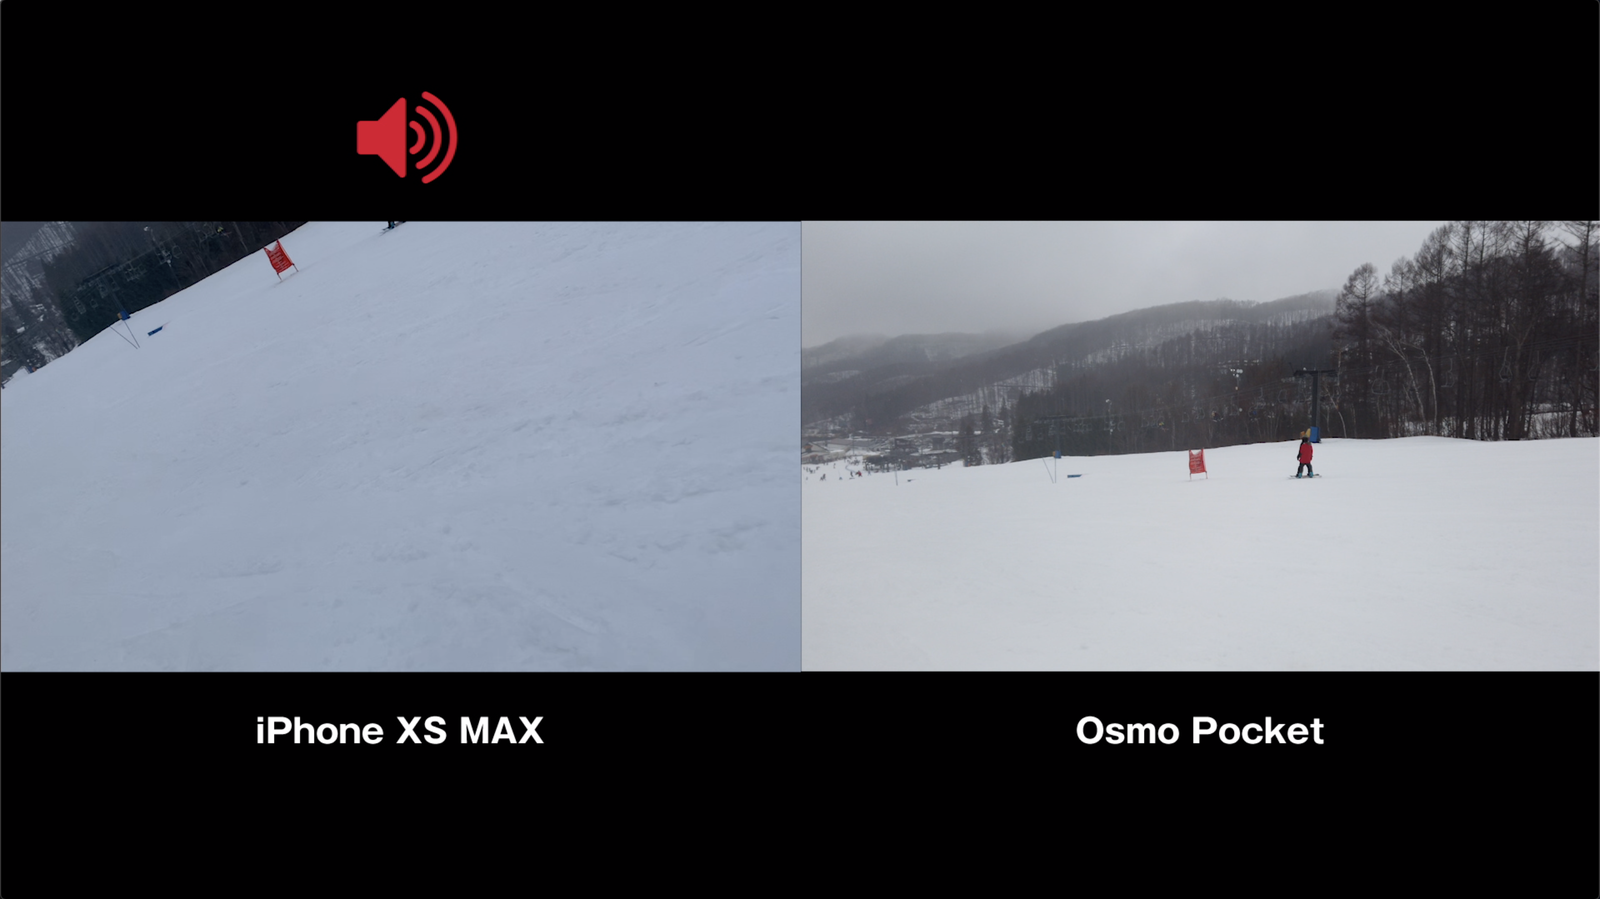 iPhone XS MAXの音声では、風を切る「ボアボア」とした音が混入してしまいます。